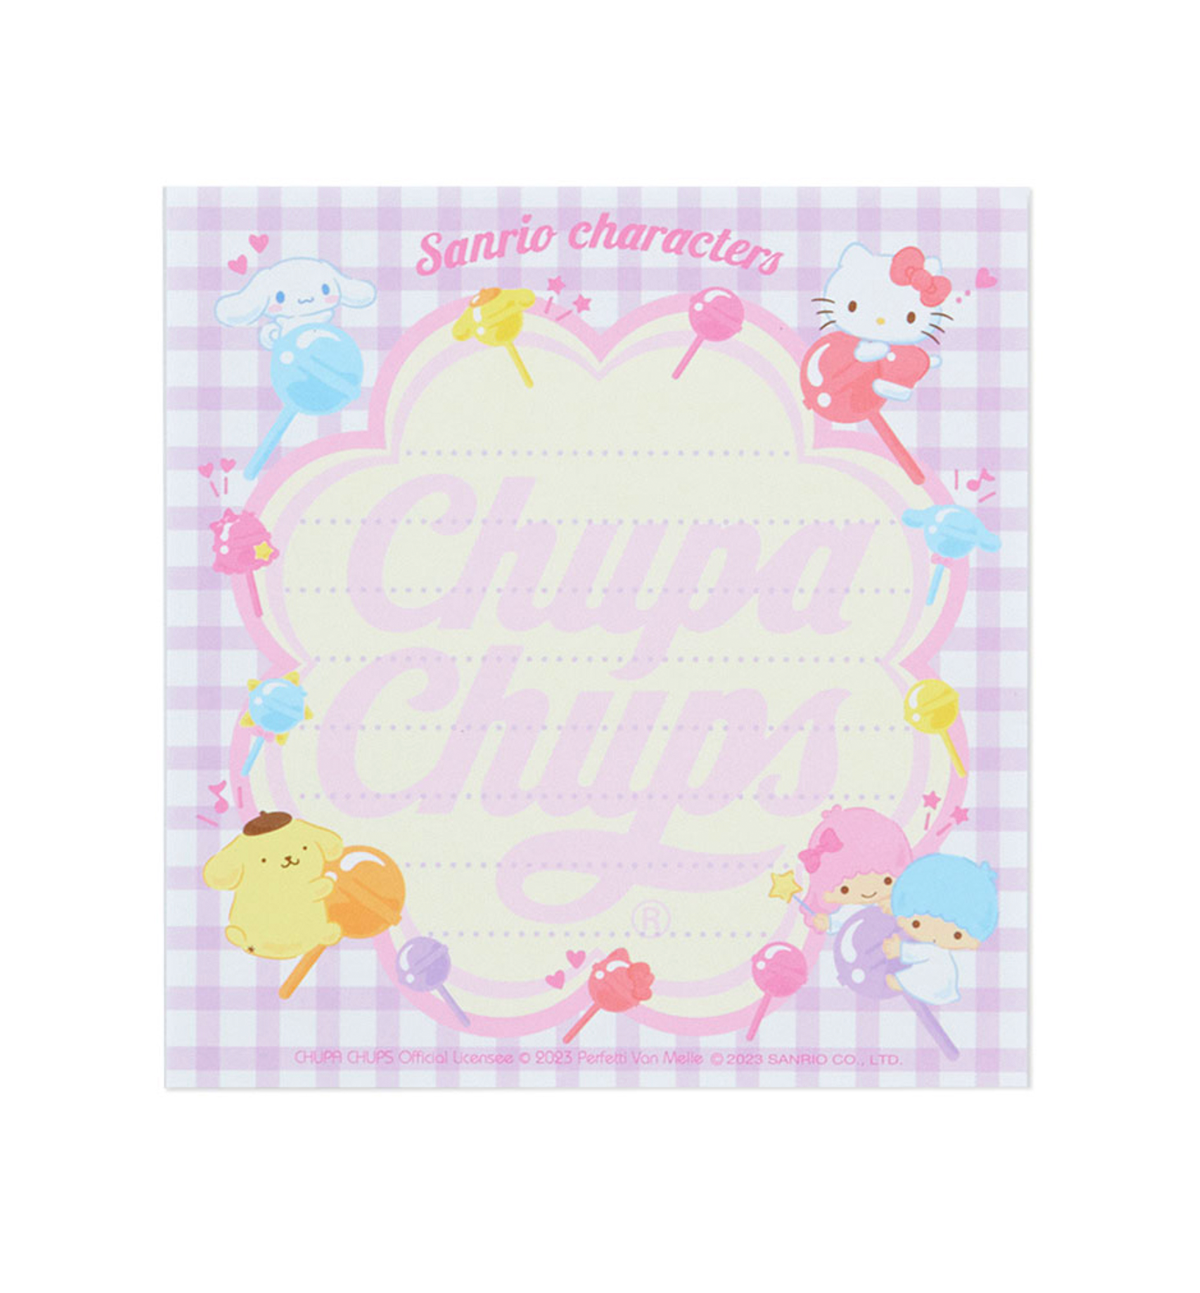 Sanrio Characters & Chupa Chups Memopad [Limited Edition]